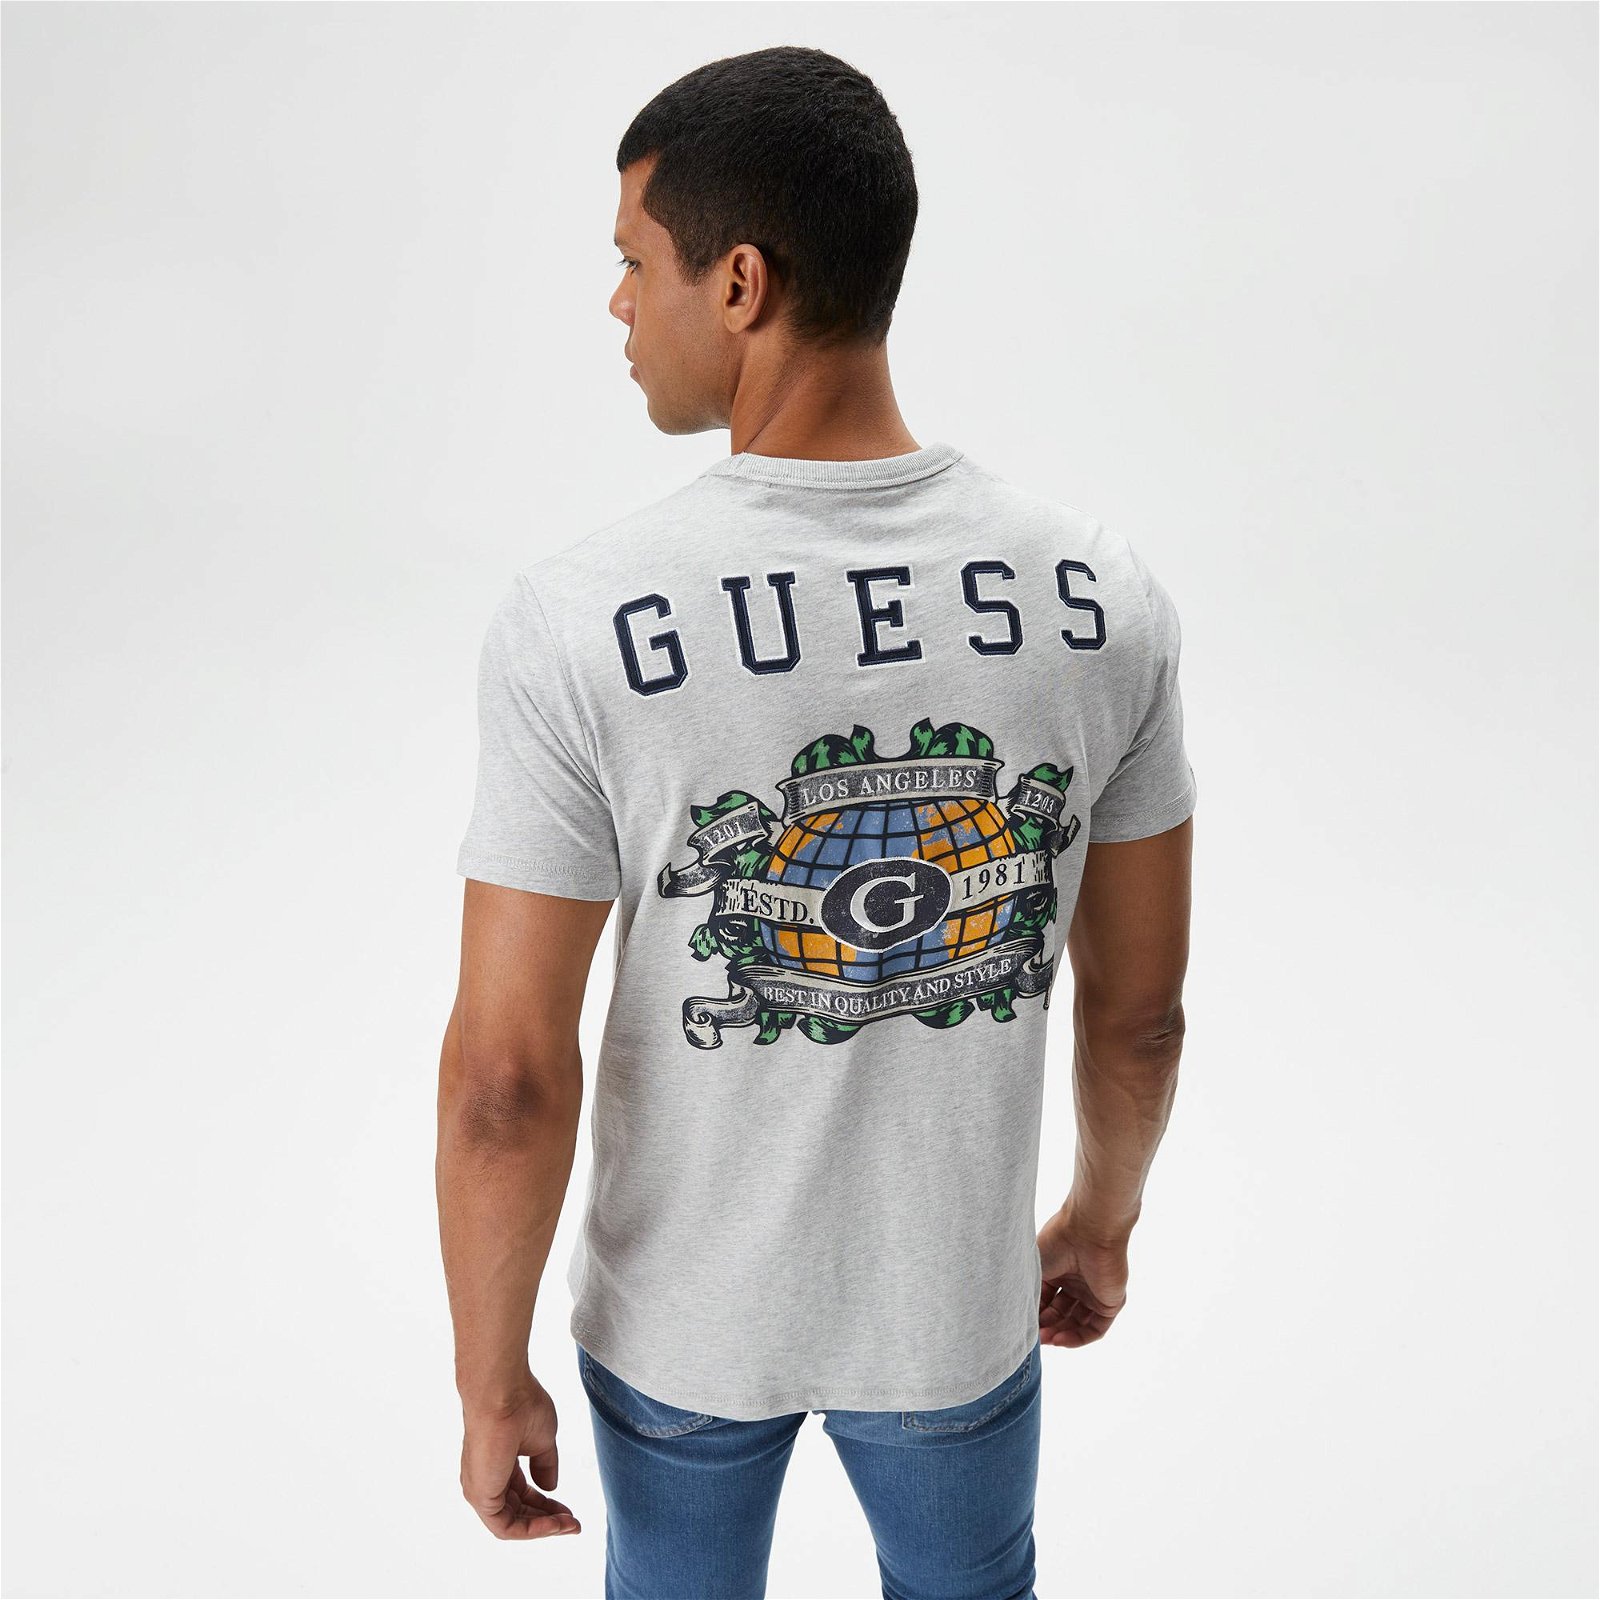 Guess Ss CN Guess Planisph Erkek Gri T-Shirt